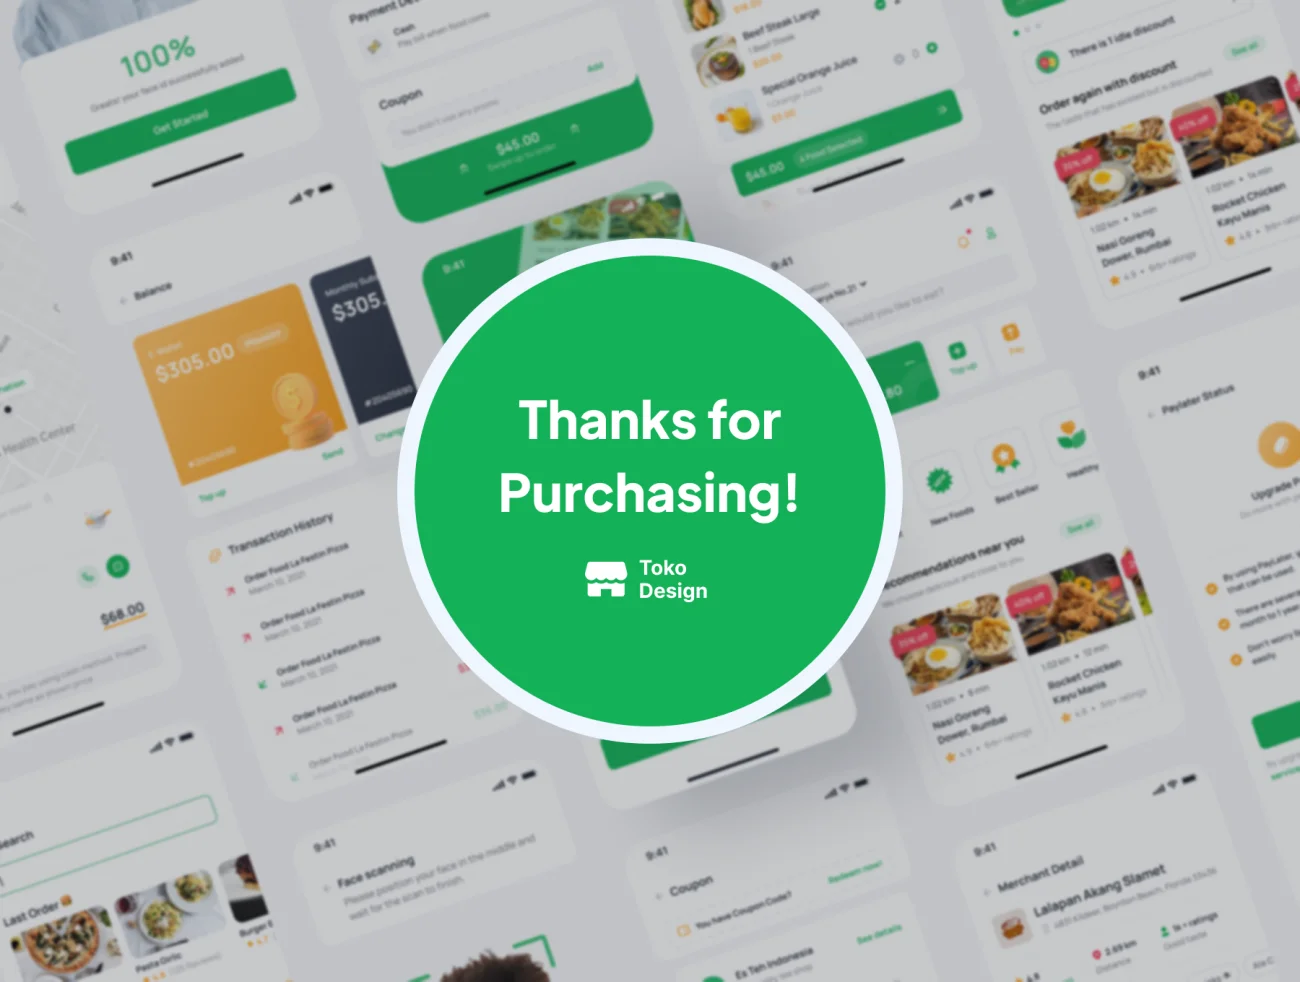 120屏外卖点餐配送应用UI设计套件 Foodies - Food Delivery App UI Kit .figma-UI/UX、ui套件、主页、付款、地图、应用、支付、网购、详情、预订-到位啦UI